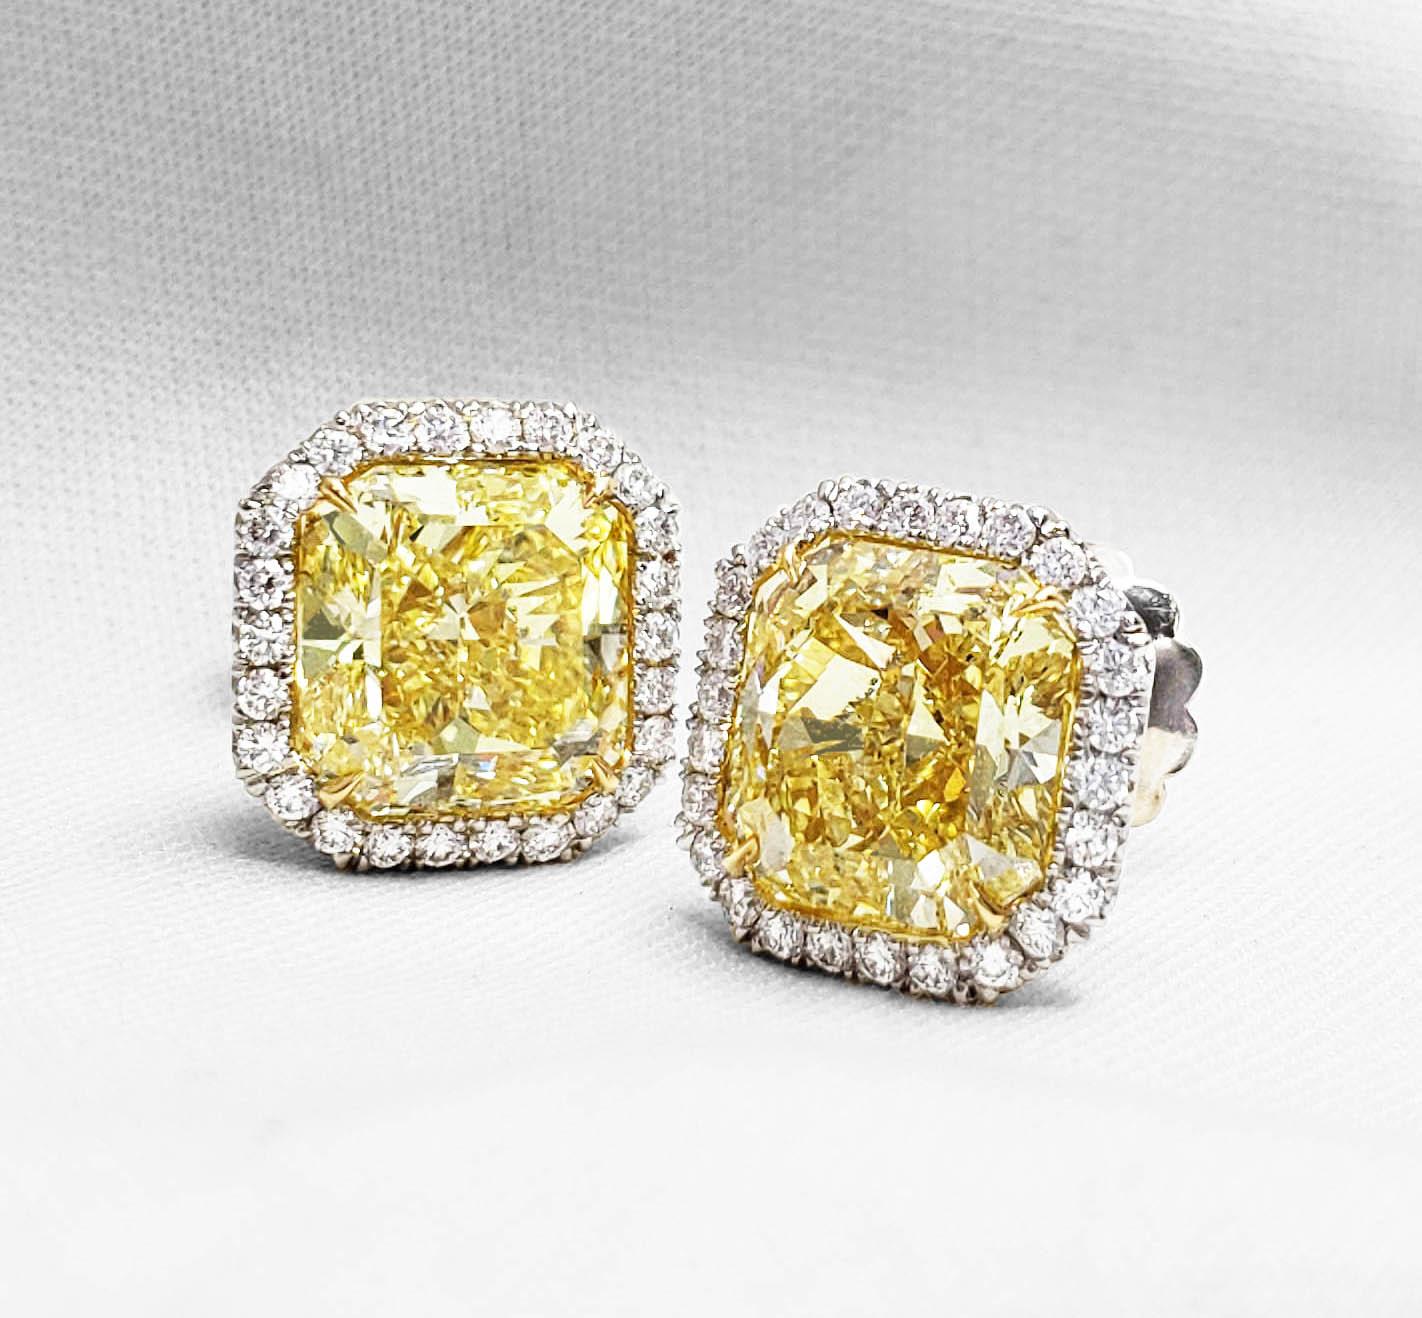 Natürliche, GIA-zertifizierte, intensiv gelbe Diamantohrringe im Brillantschliff mit 4,79 bzw. 4,94 Karat in einer Fassung aus Platin und 18 Karat Gelbgold. Klassische Ohrringe mit intensiv gelben Diamanten im Radiant-Schliff, Reinheit VS2, mit 52